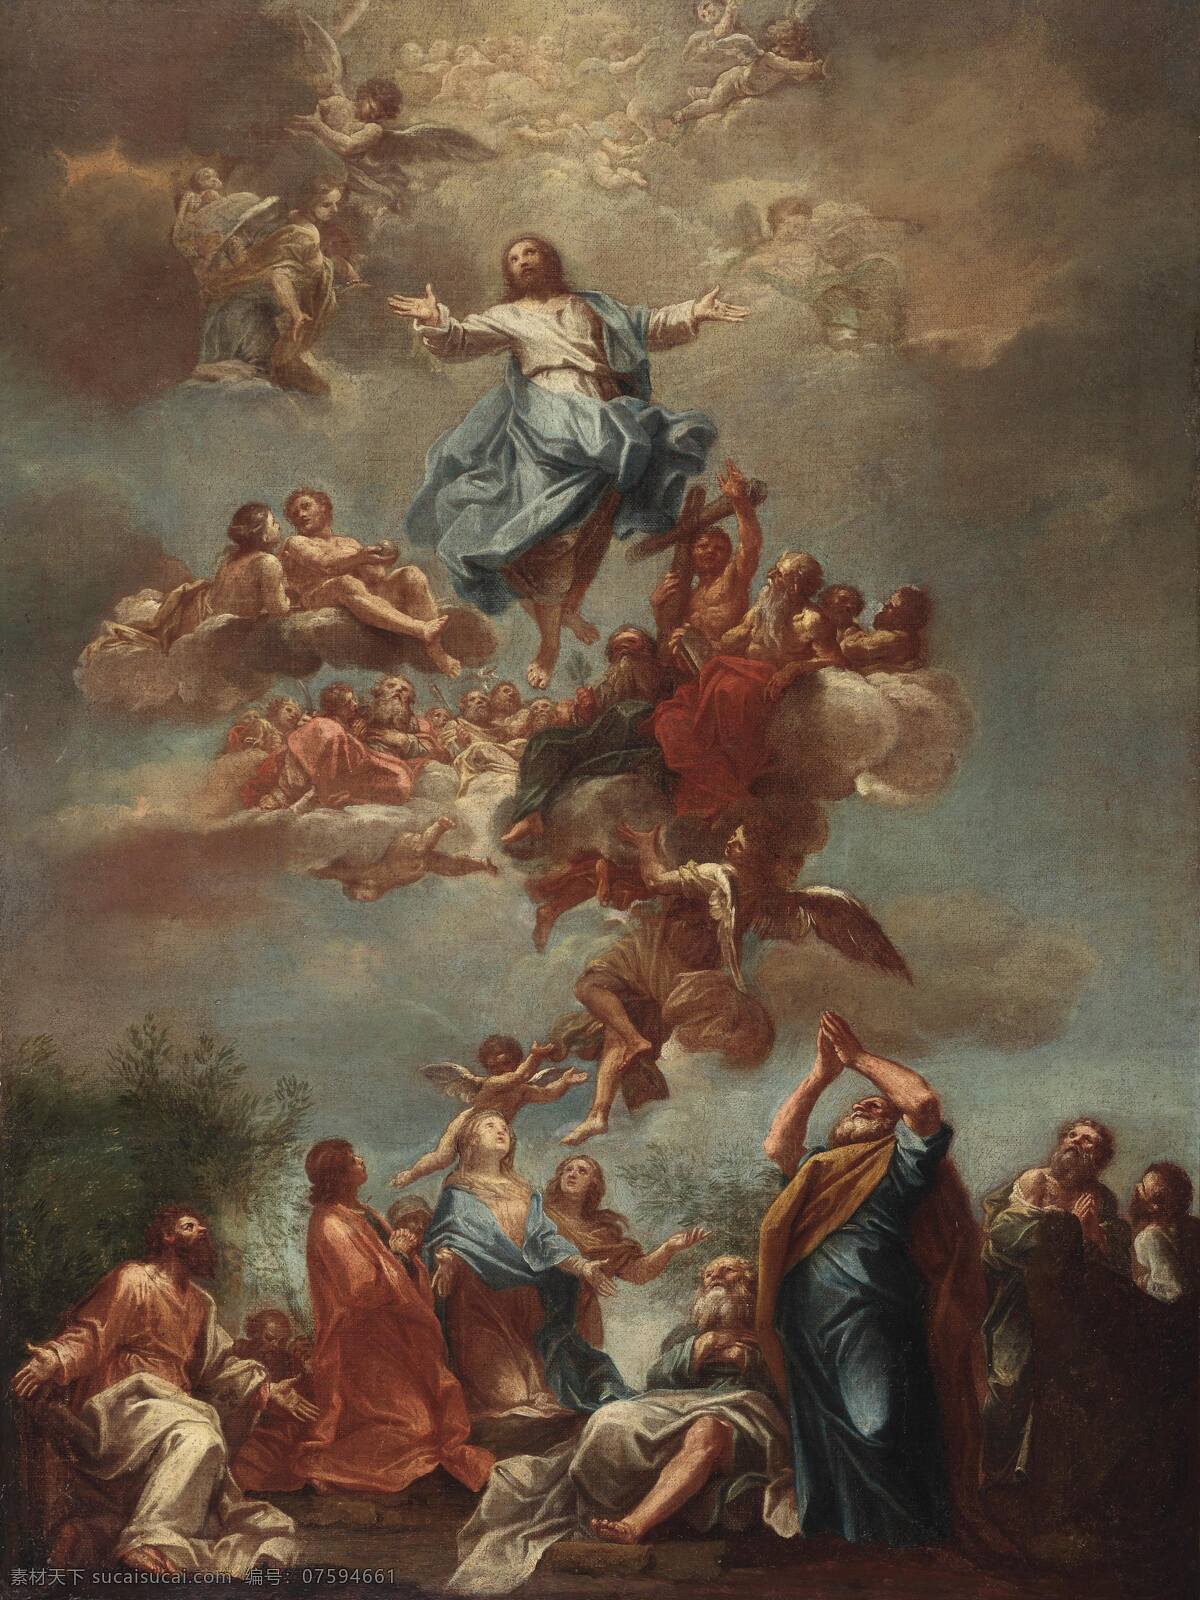 基督升天 法国学院 18世纪 宗教油画 耶稣基督升天 天使 圣徙祈祷 祝福 古典油画 油画 绘画书法 文化艺术